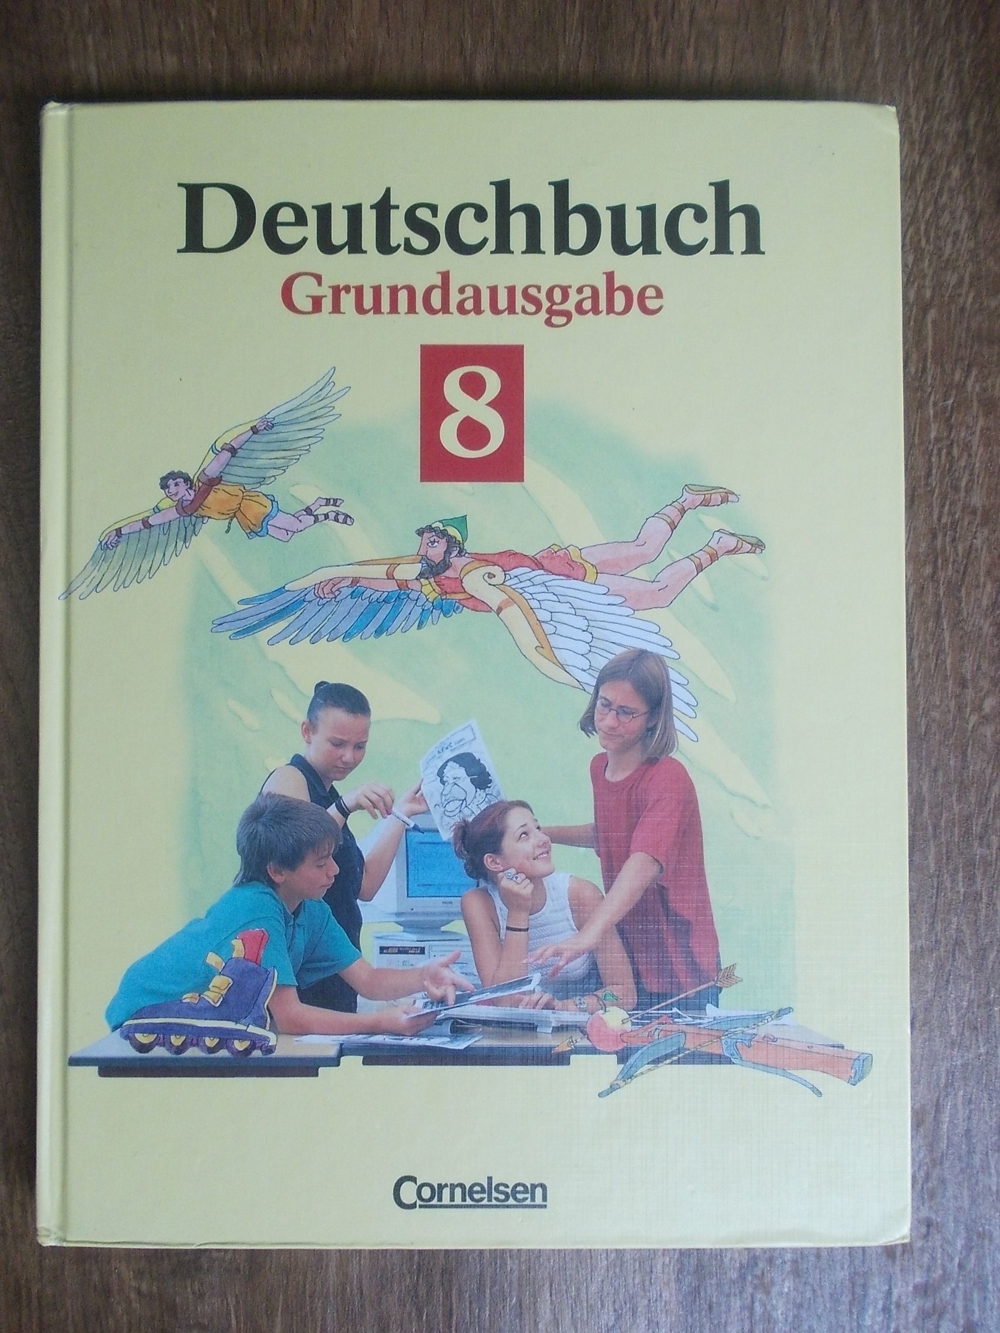 Deutschbuch Sprach- und Lesebuch Grundausgabe